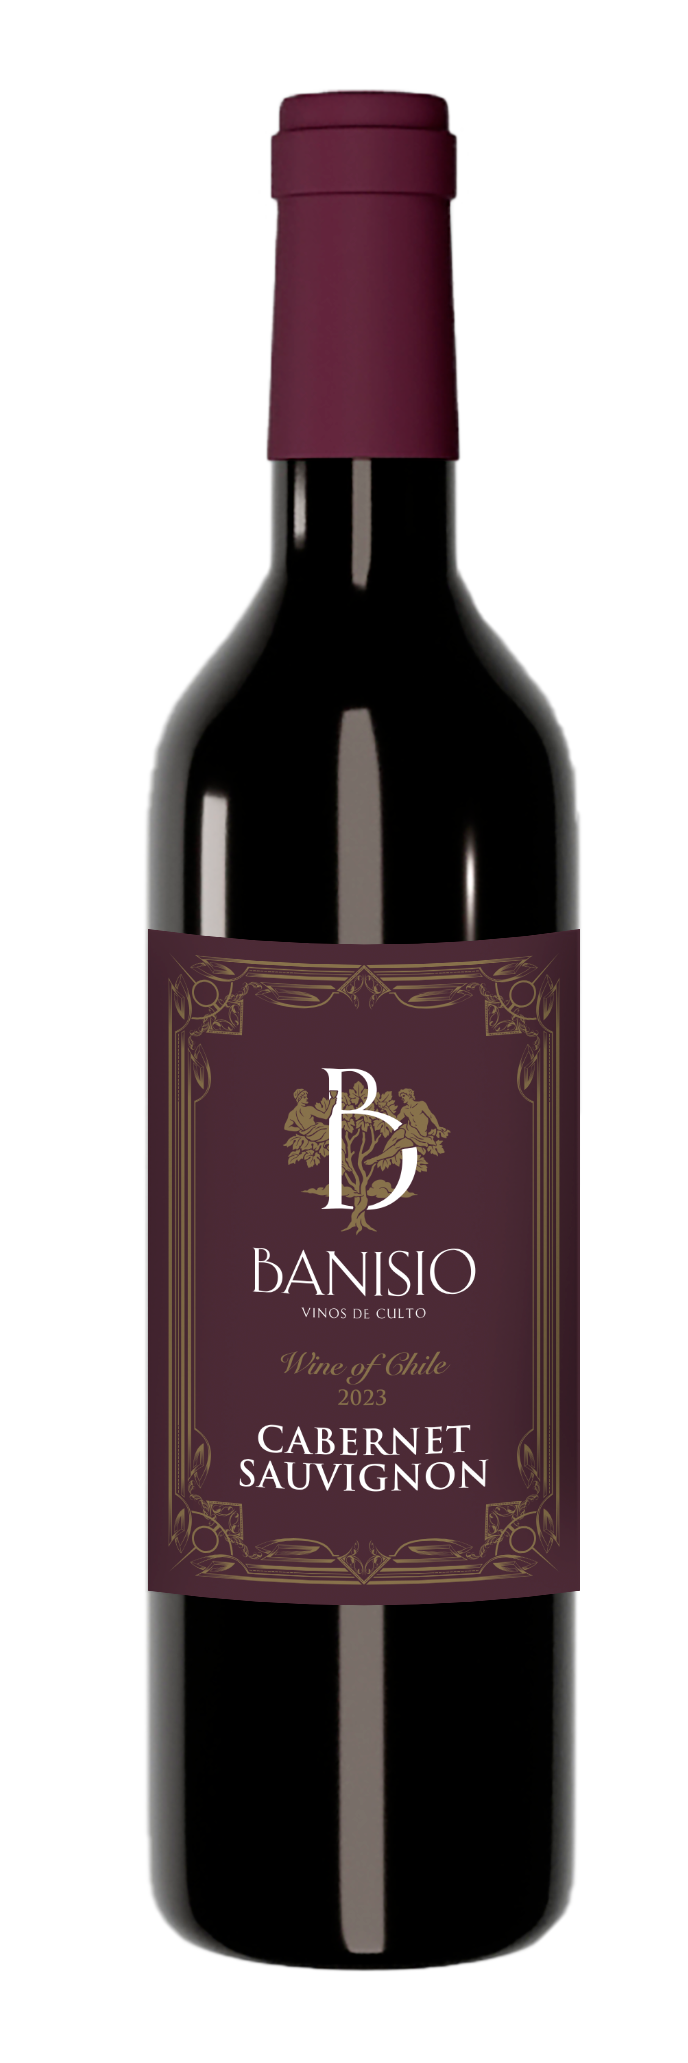 Wine from Chile – Cabernet Sauvignon – Banisio